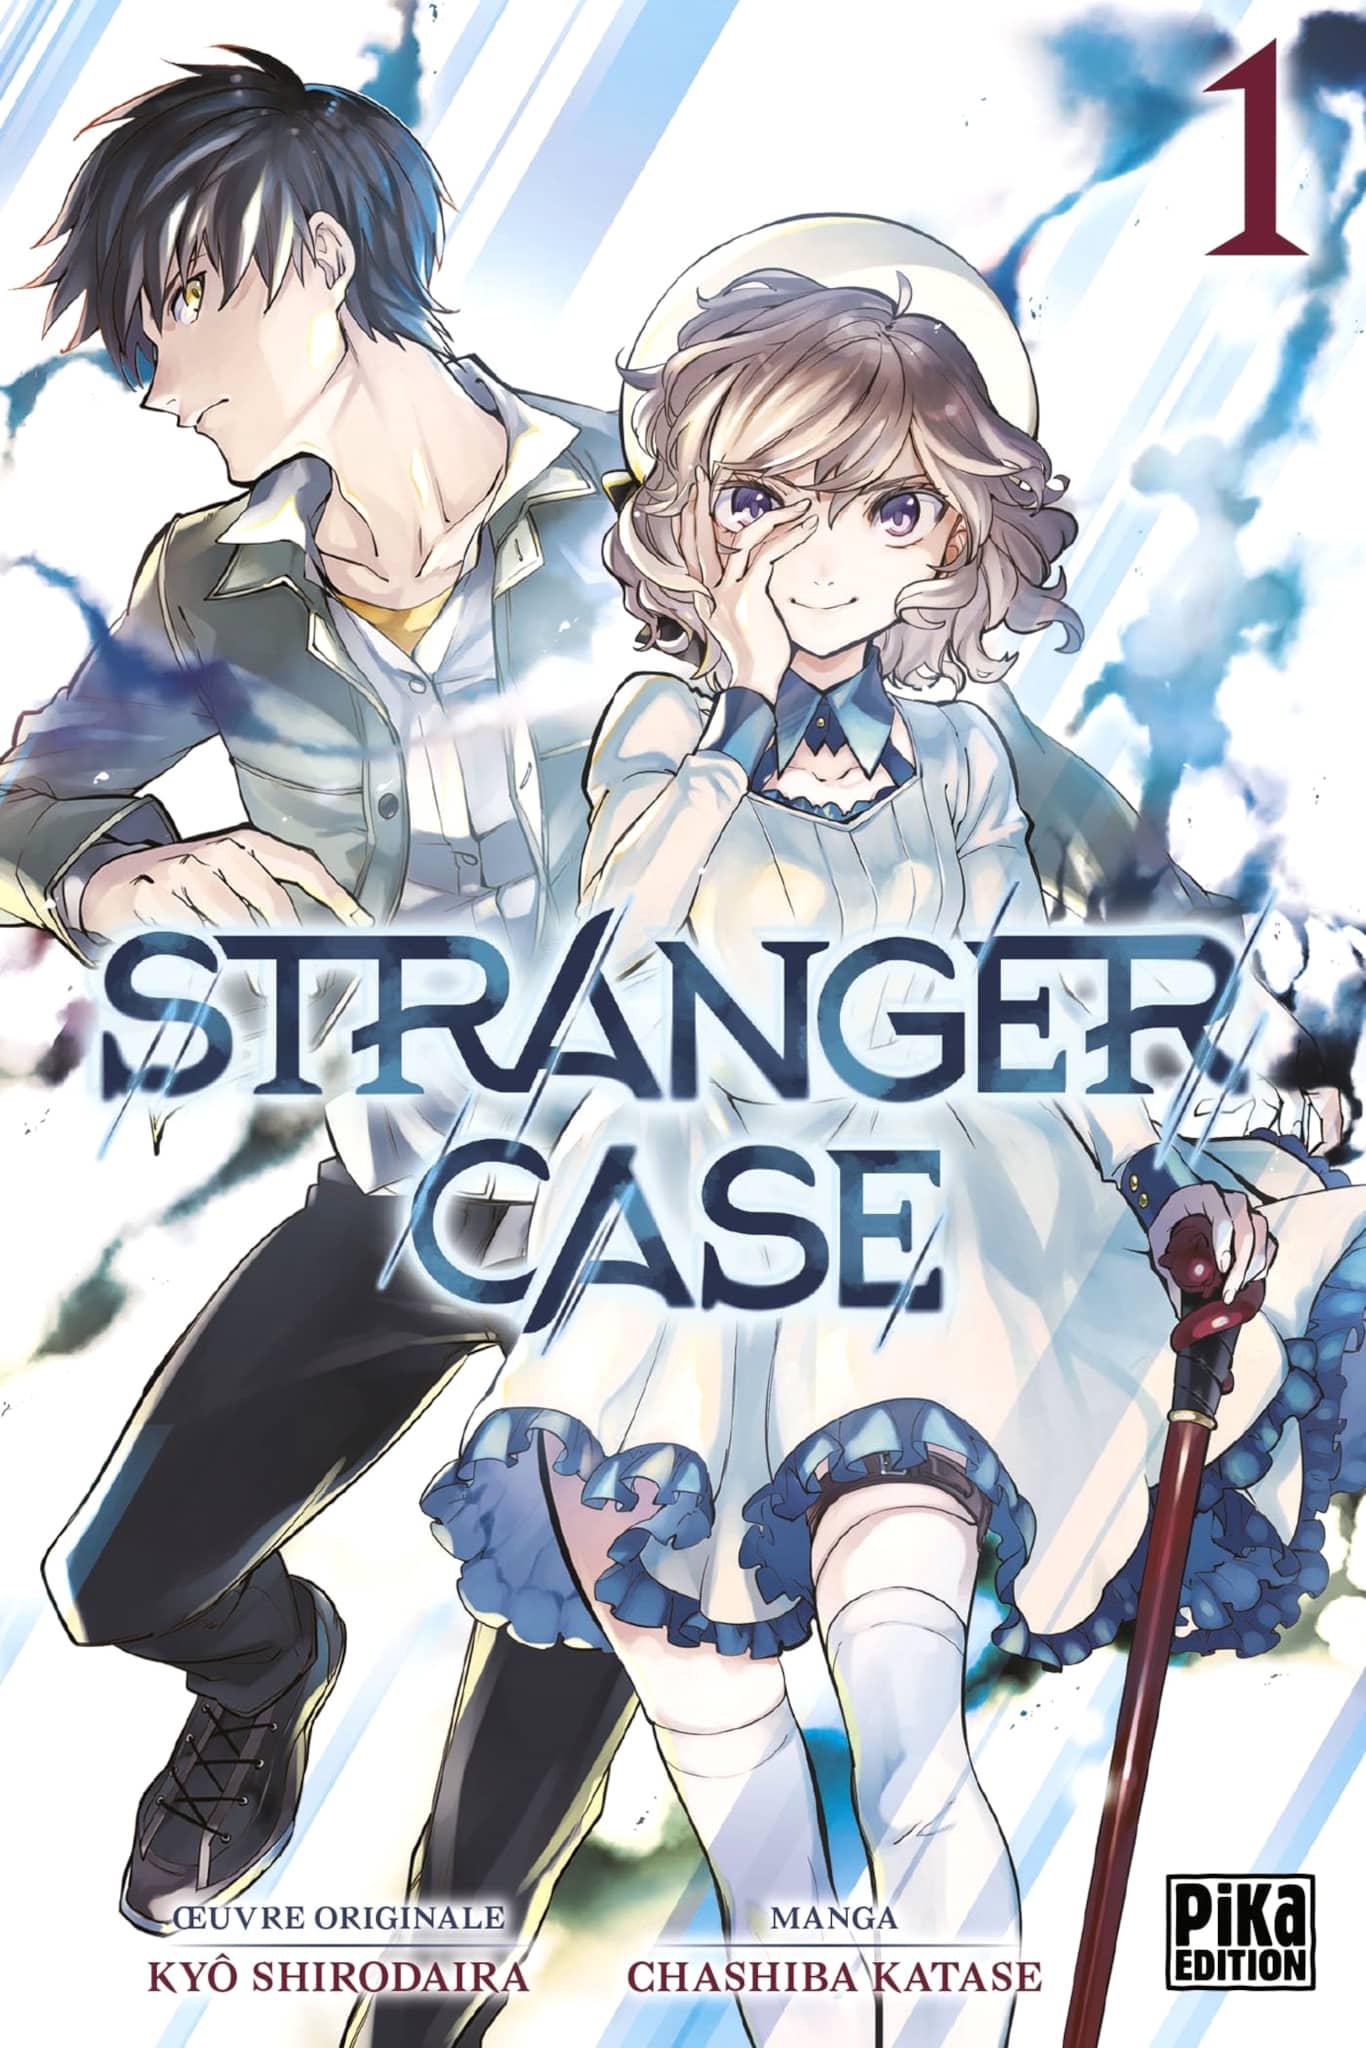 Tome 1 du manga Stranger Case